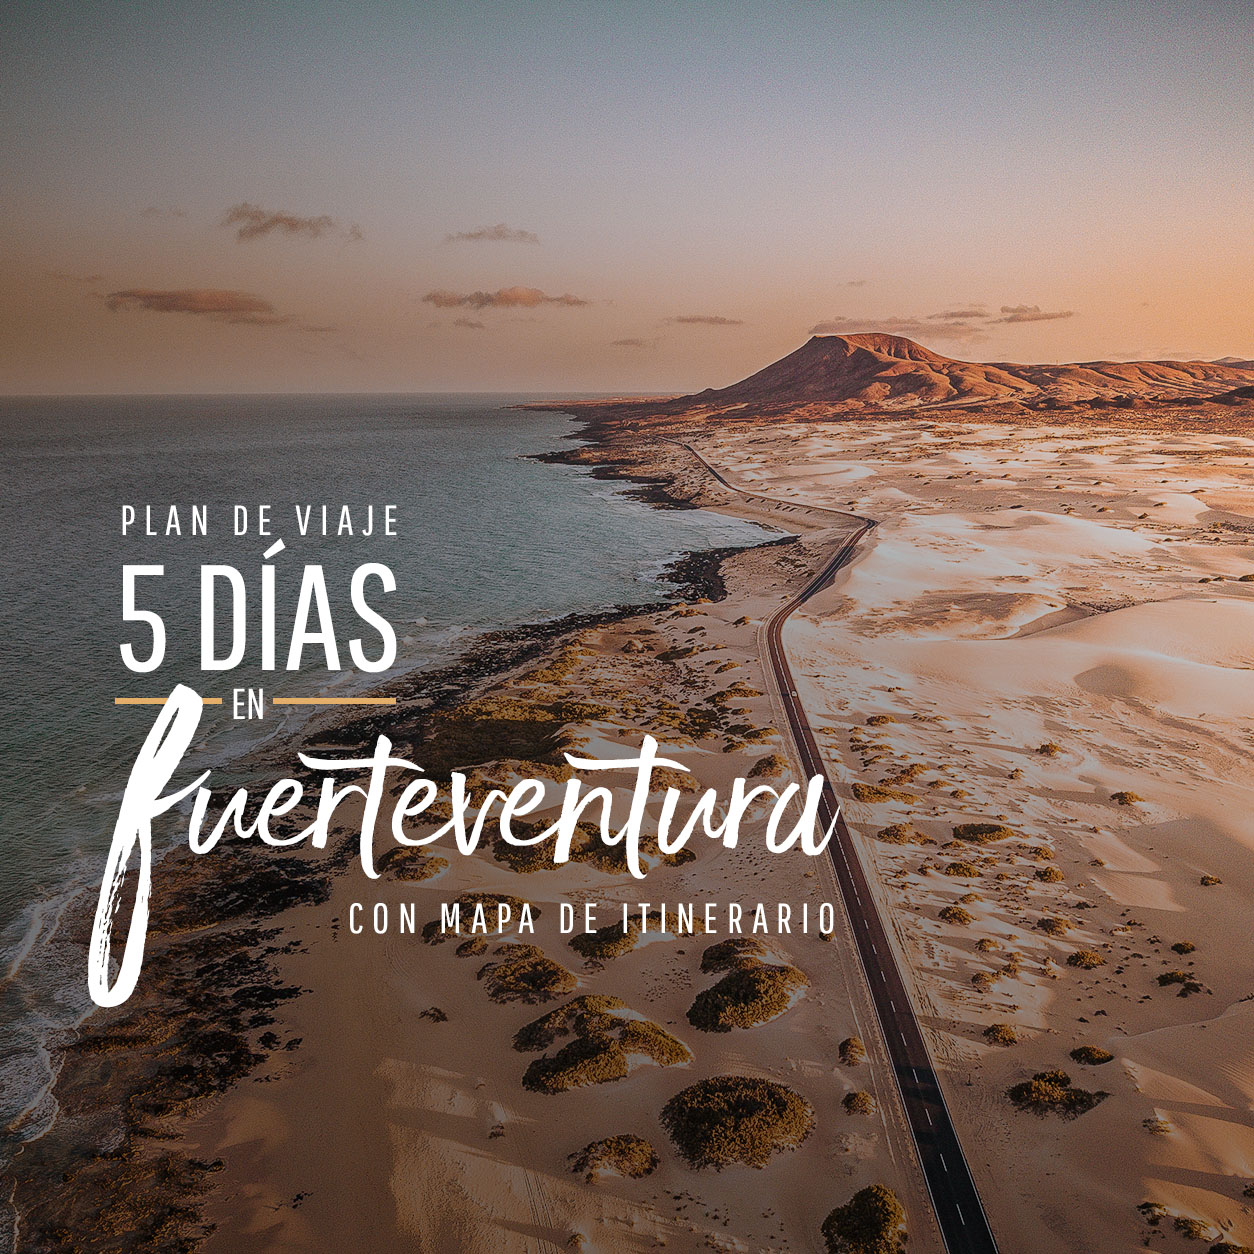 Fuerteventura - qué ver en 5 días